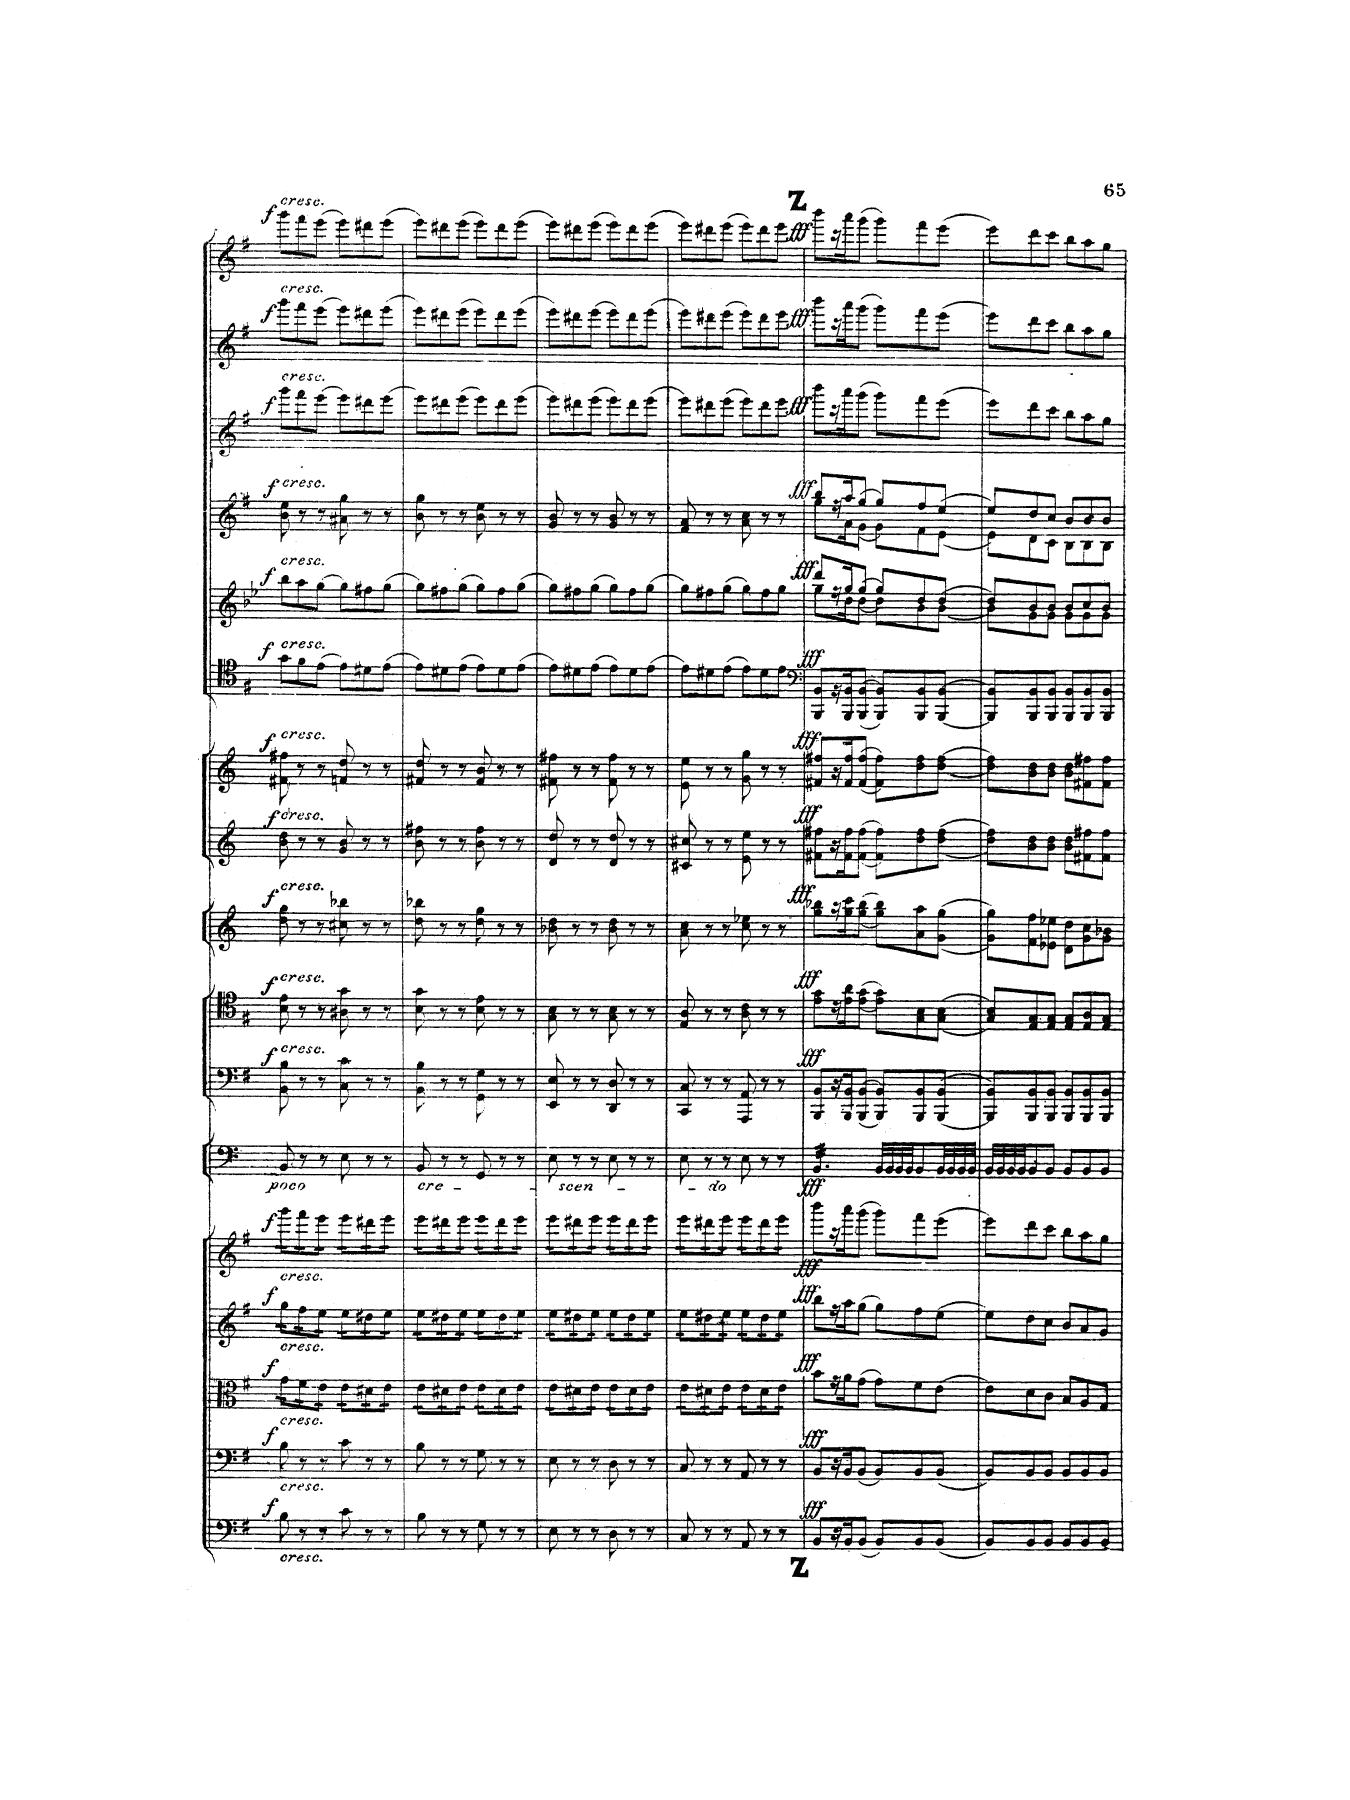 tchaikovsky-symphony-5-1st-mvmt-01.jpg